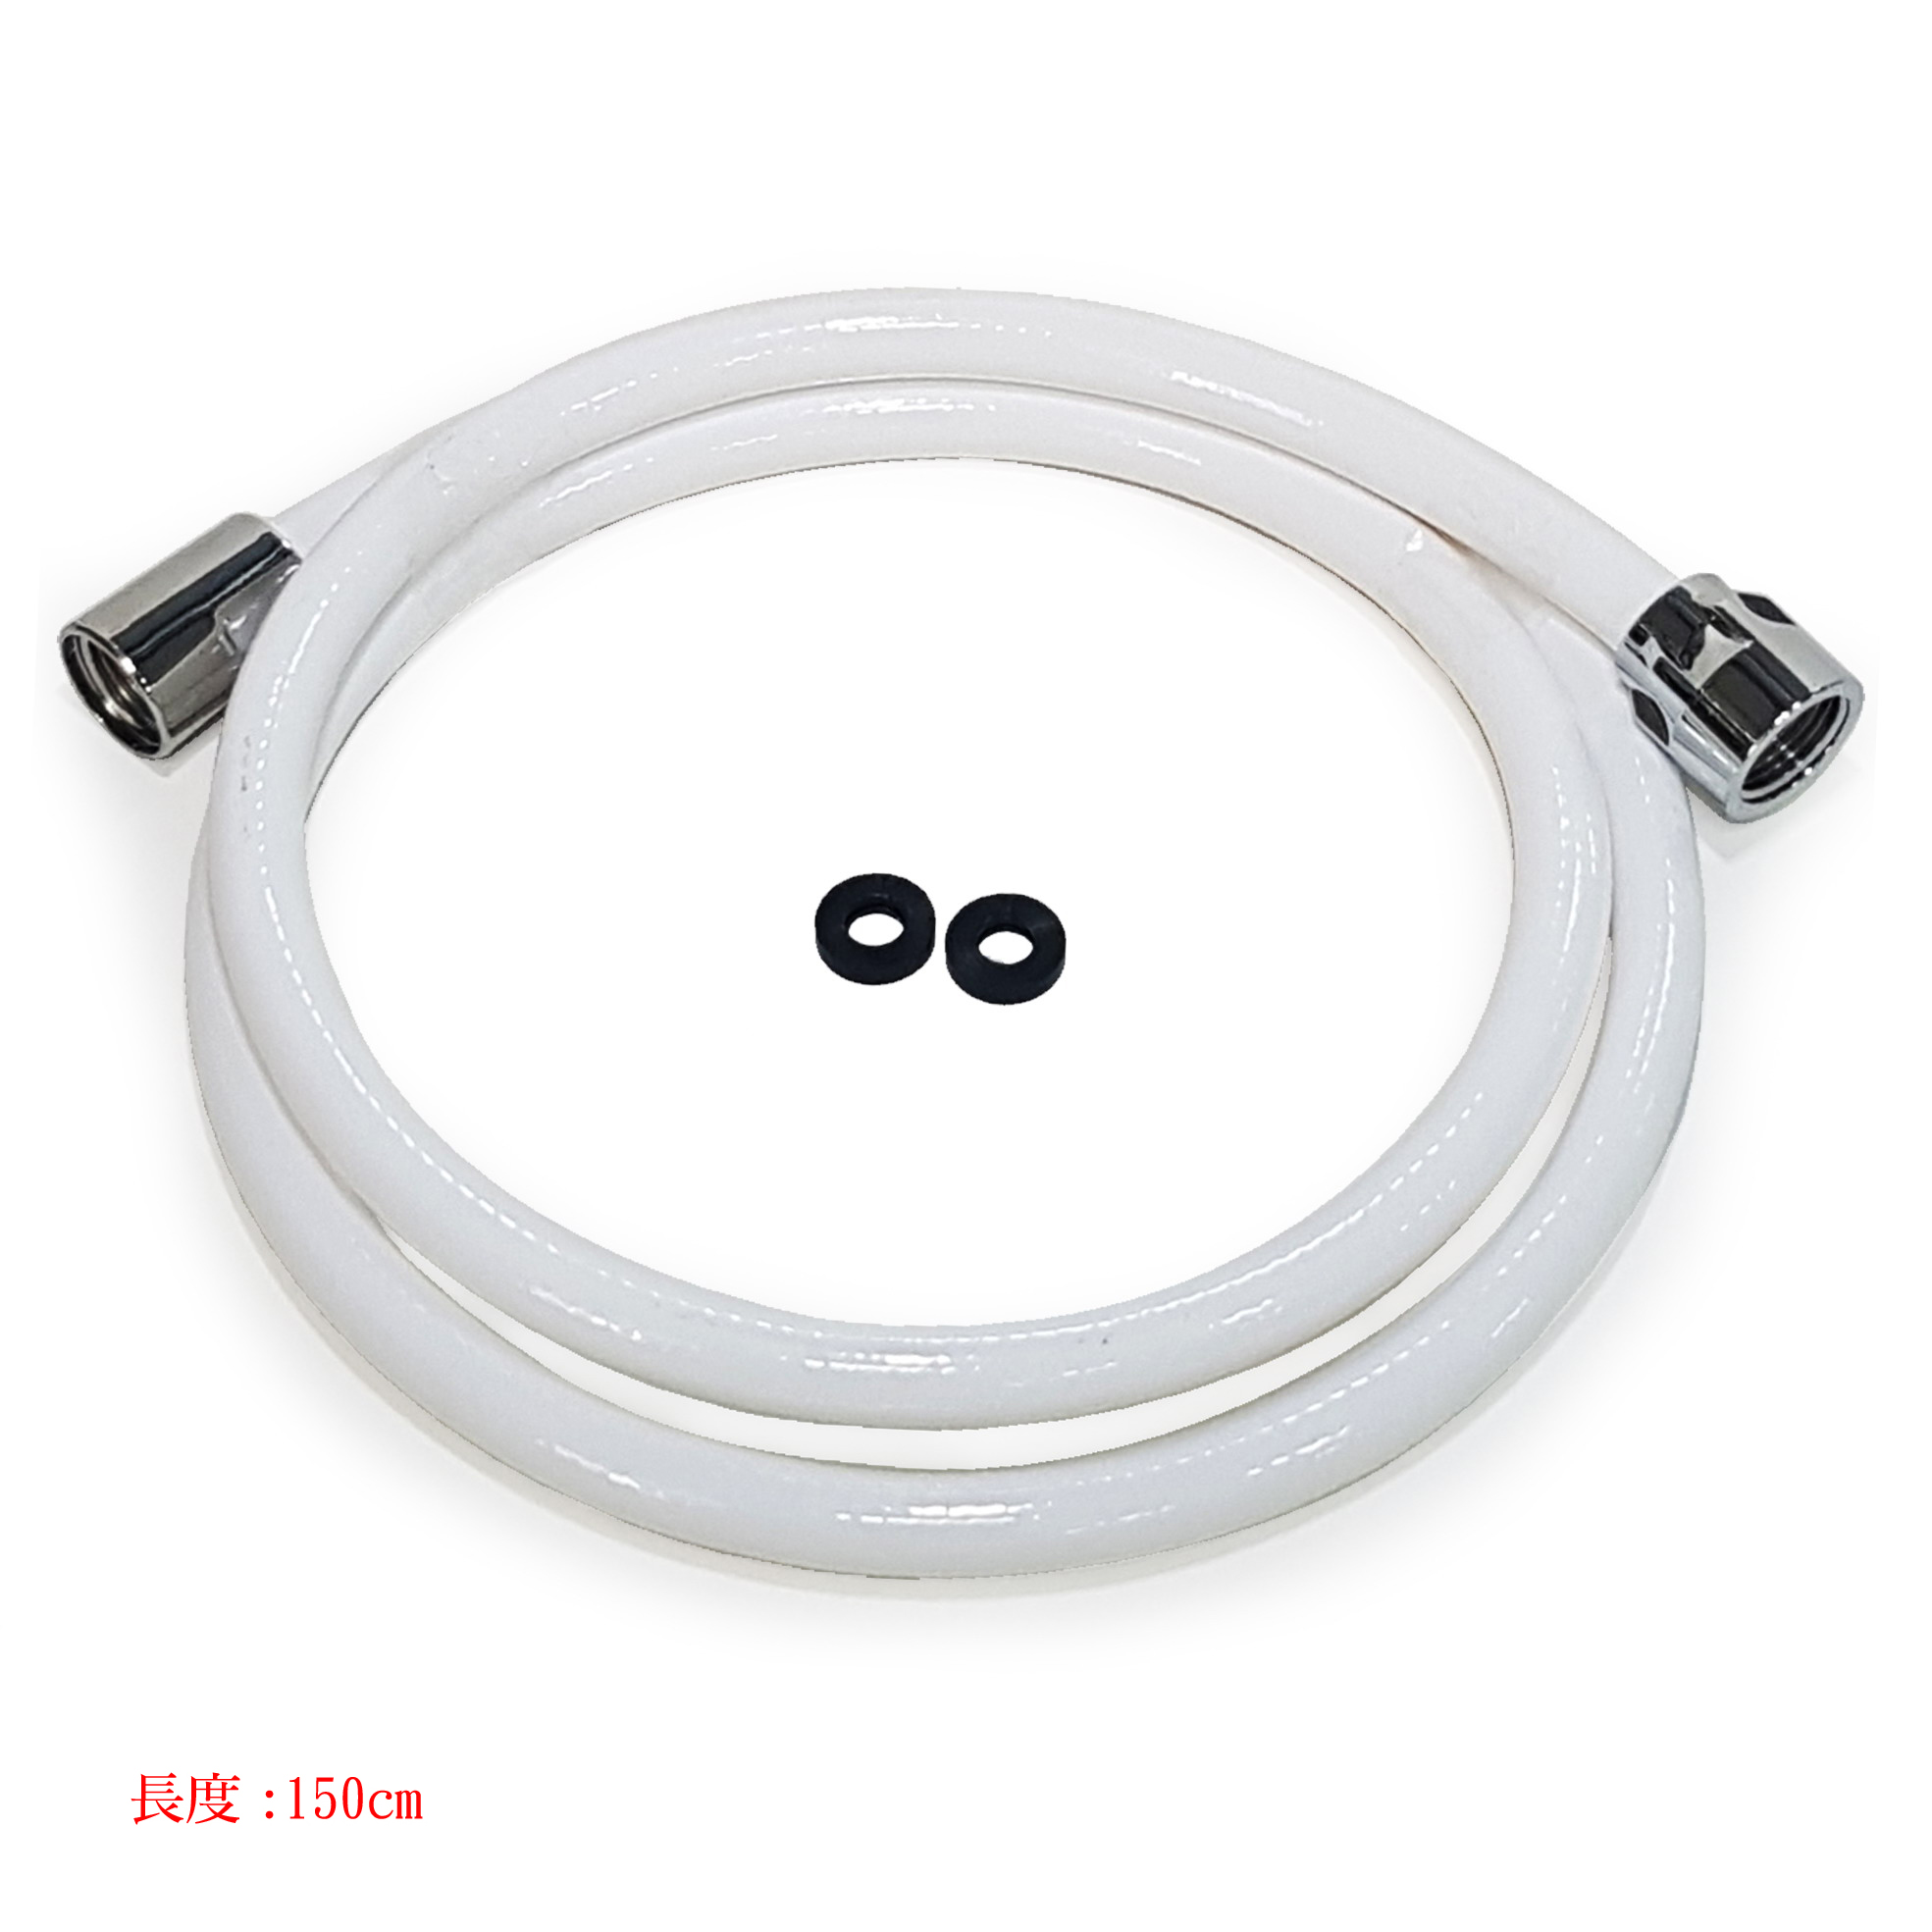 抗污型耐壓管-白色(150cm)